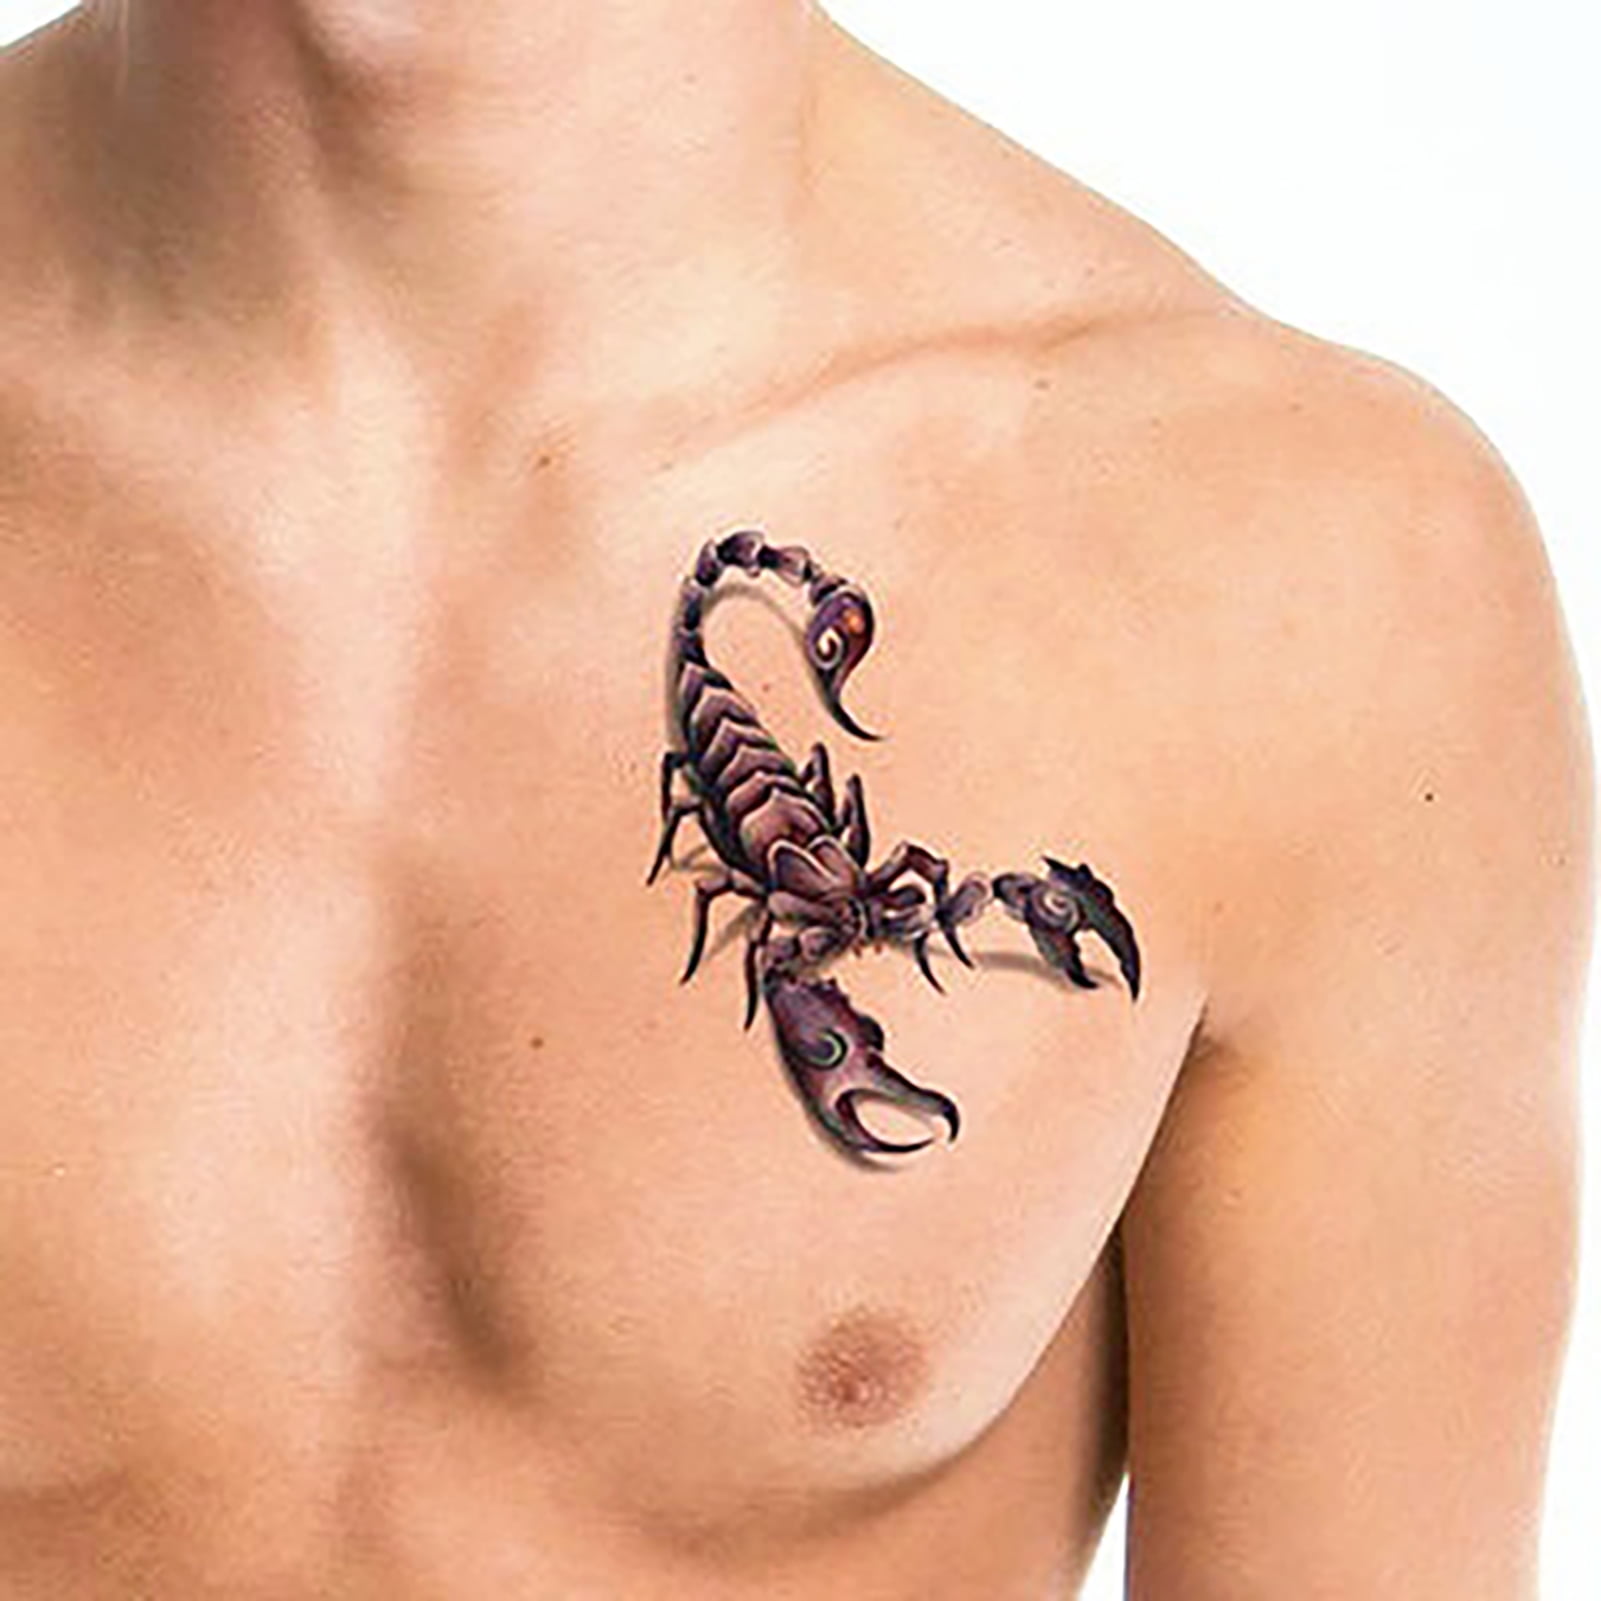 3D tattoo scorpion tattoo  wwwimmortaltattooshopcom www  Flickr